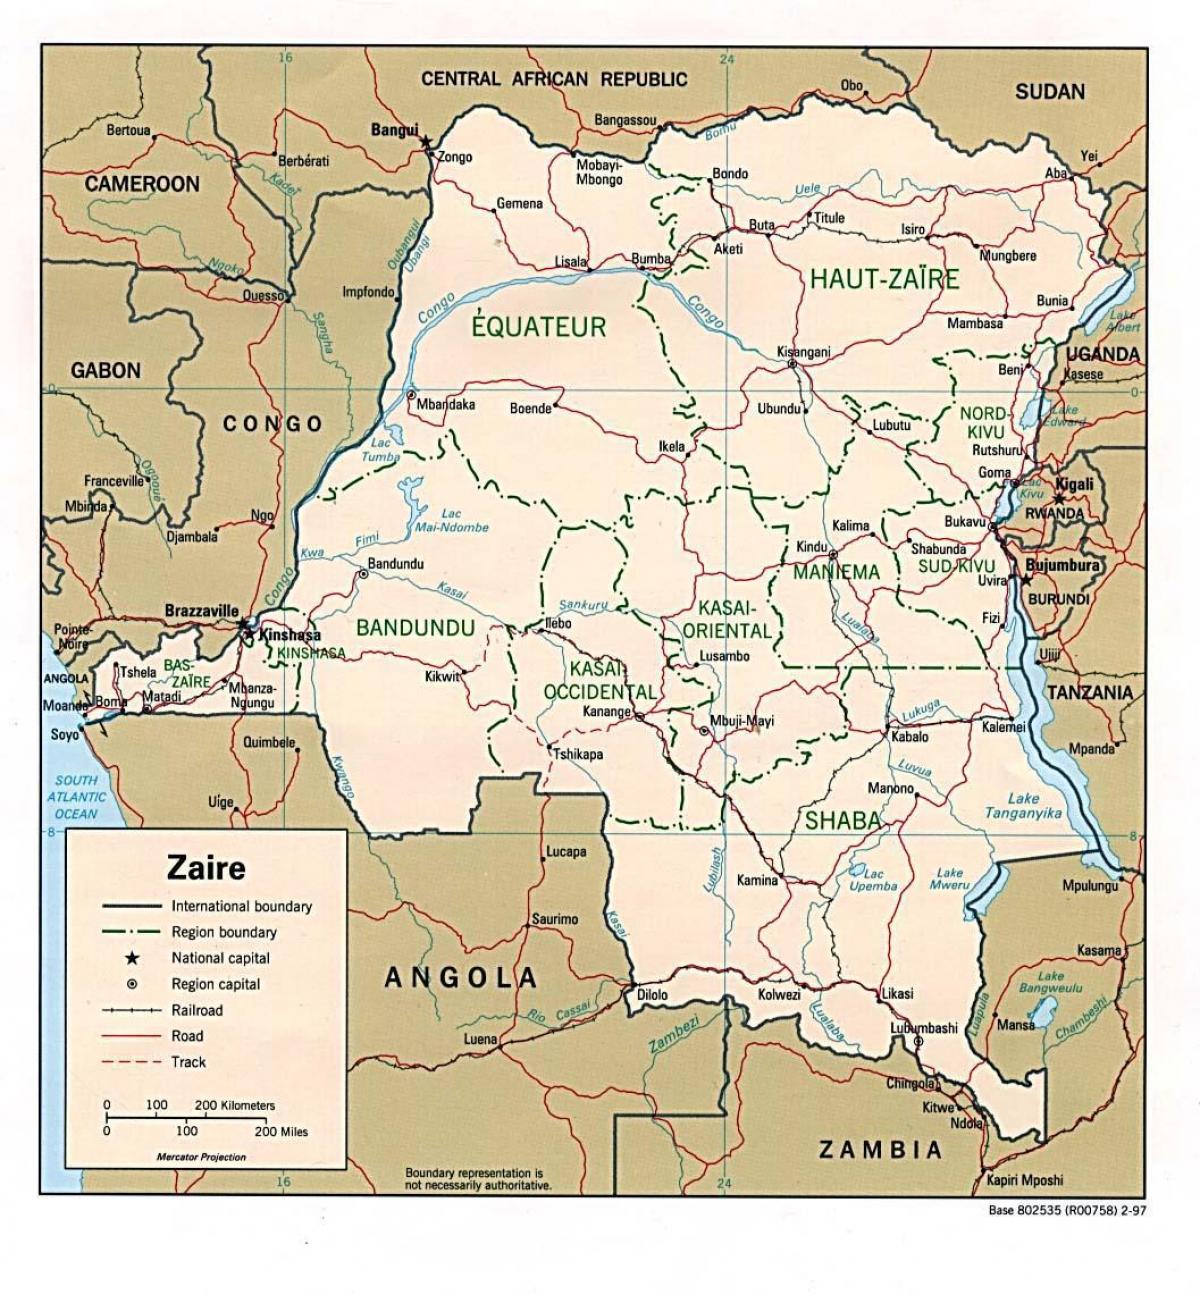 ზაირი აფრიკის რუკა